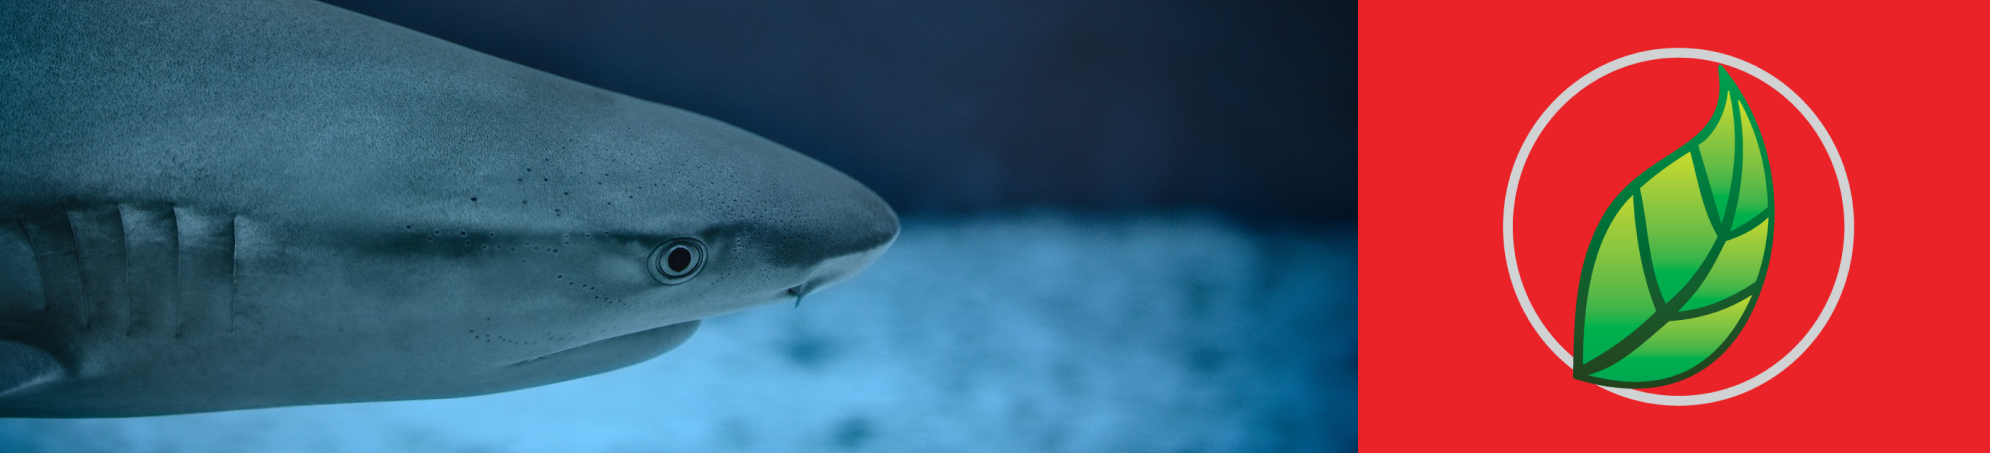 Cartílago de tiburón: qué es y beneficios